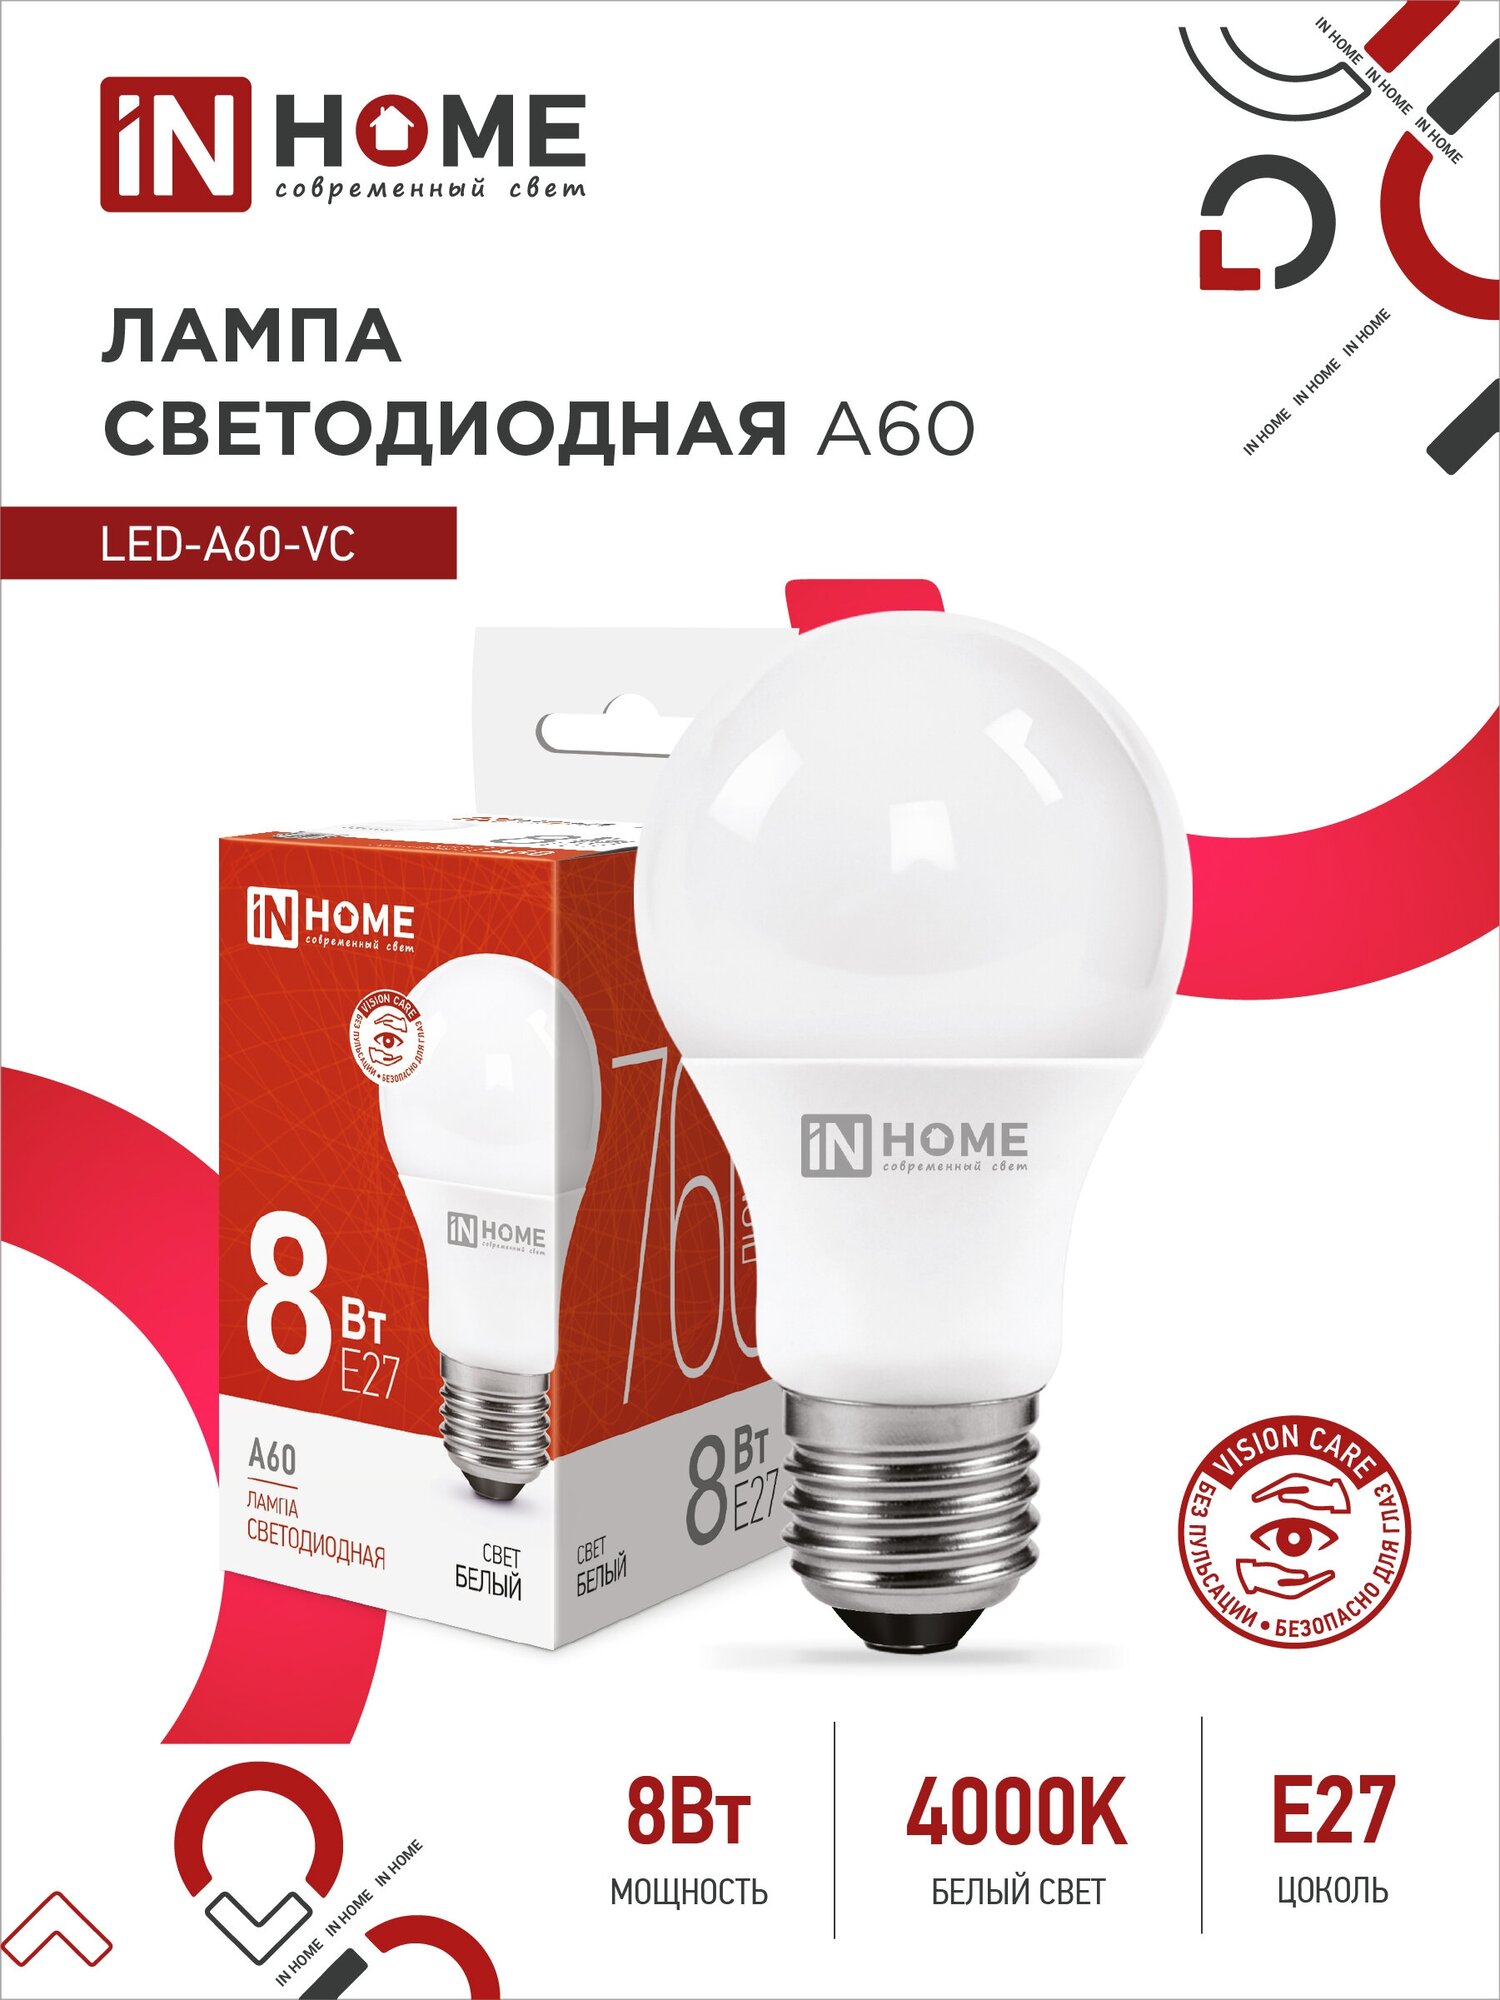 Упаковка ламп INHOME LED-A60-VC, 8Вт, 720lm, 30000ч, 4000К, E27, 10 шт. - фото №1